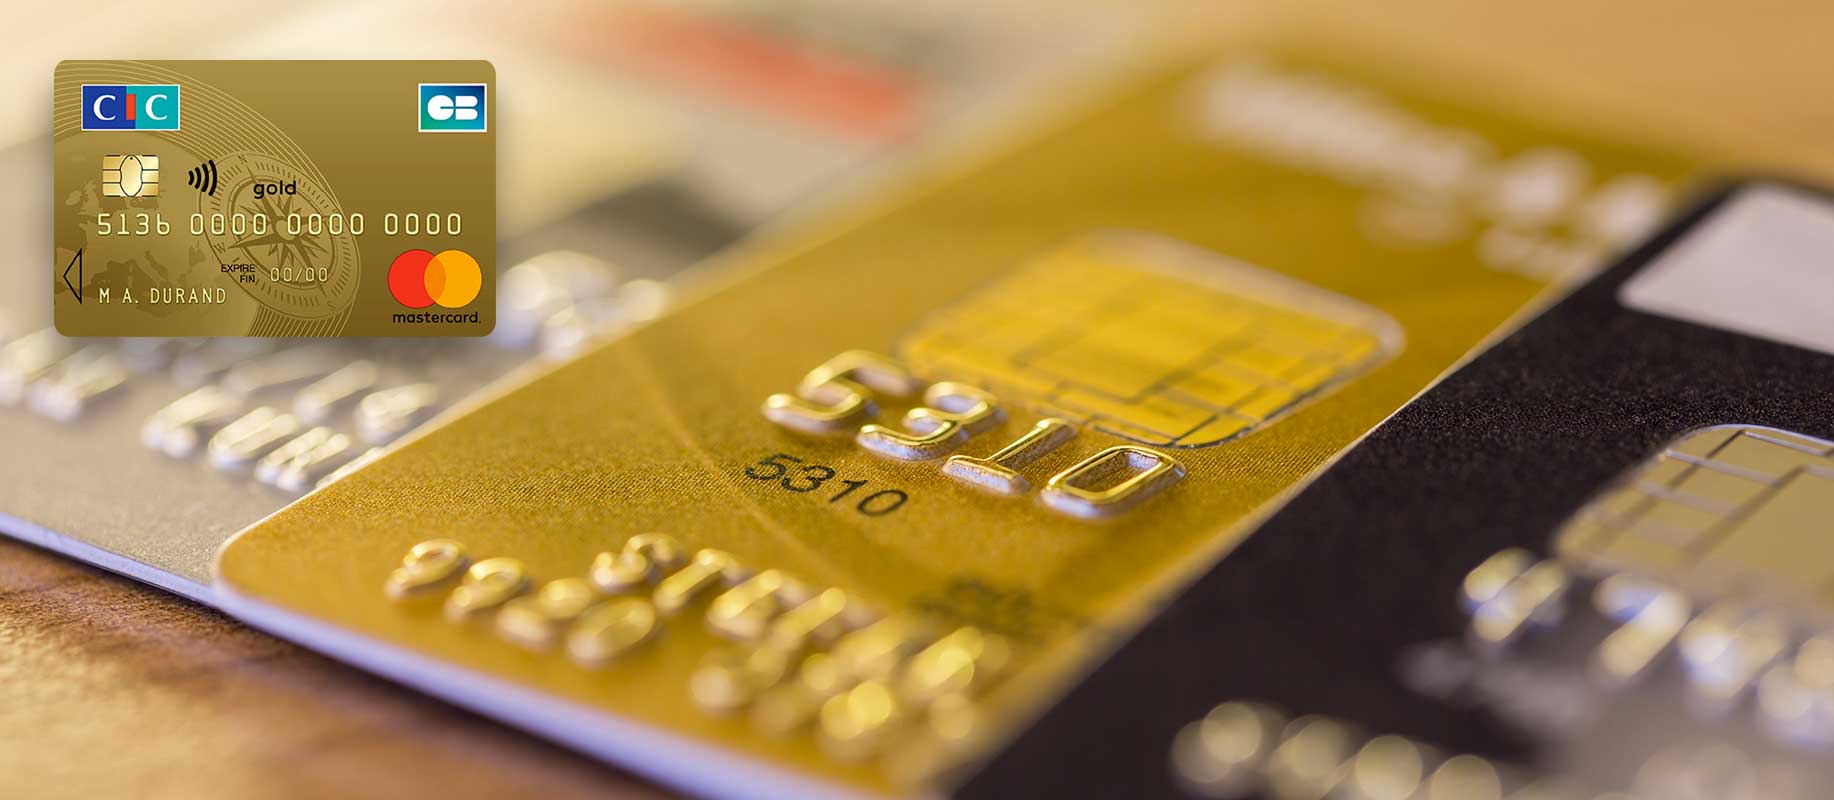 Quelles sont les garanties de la carte MasterCard ?